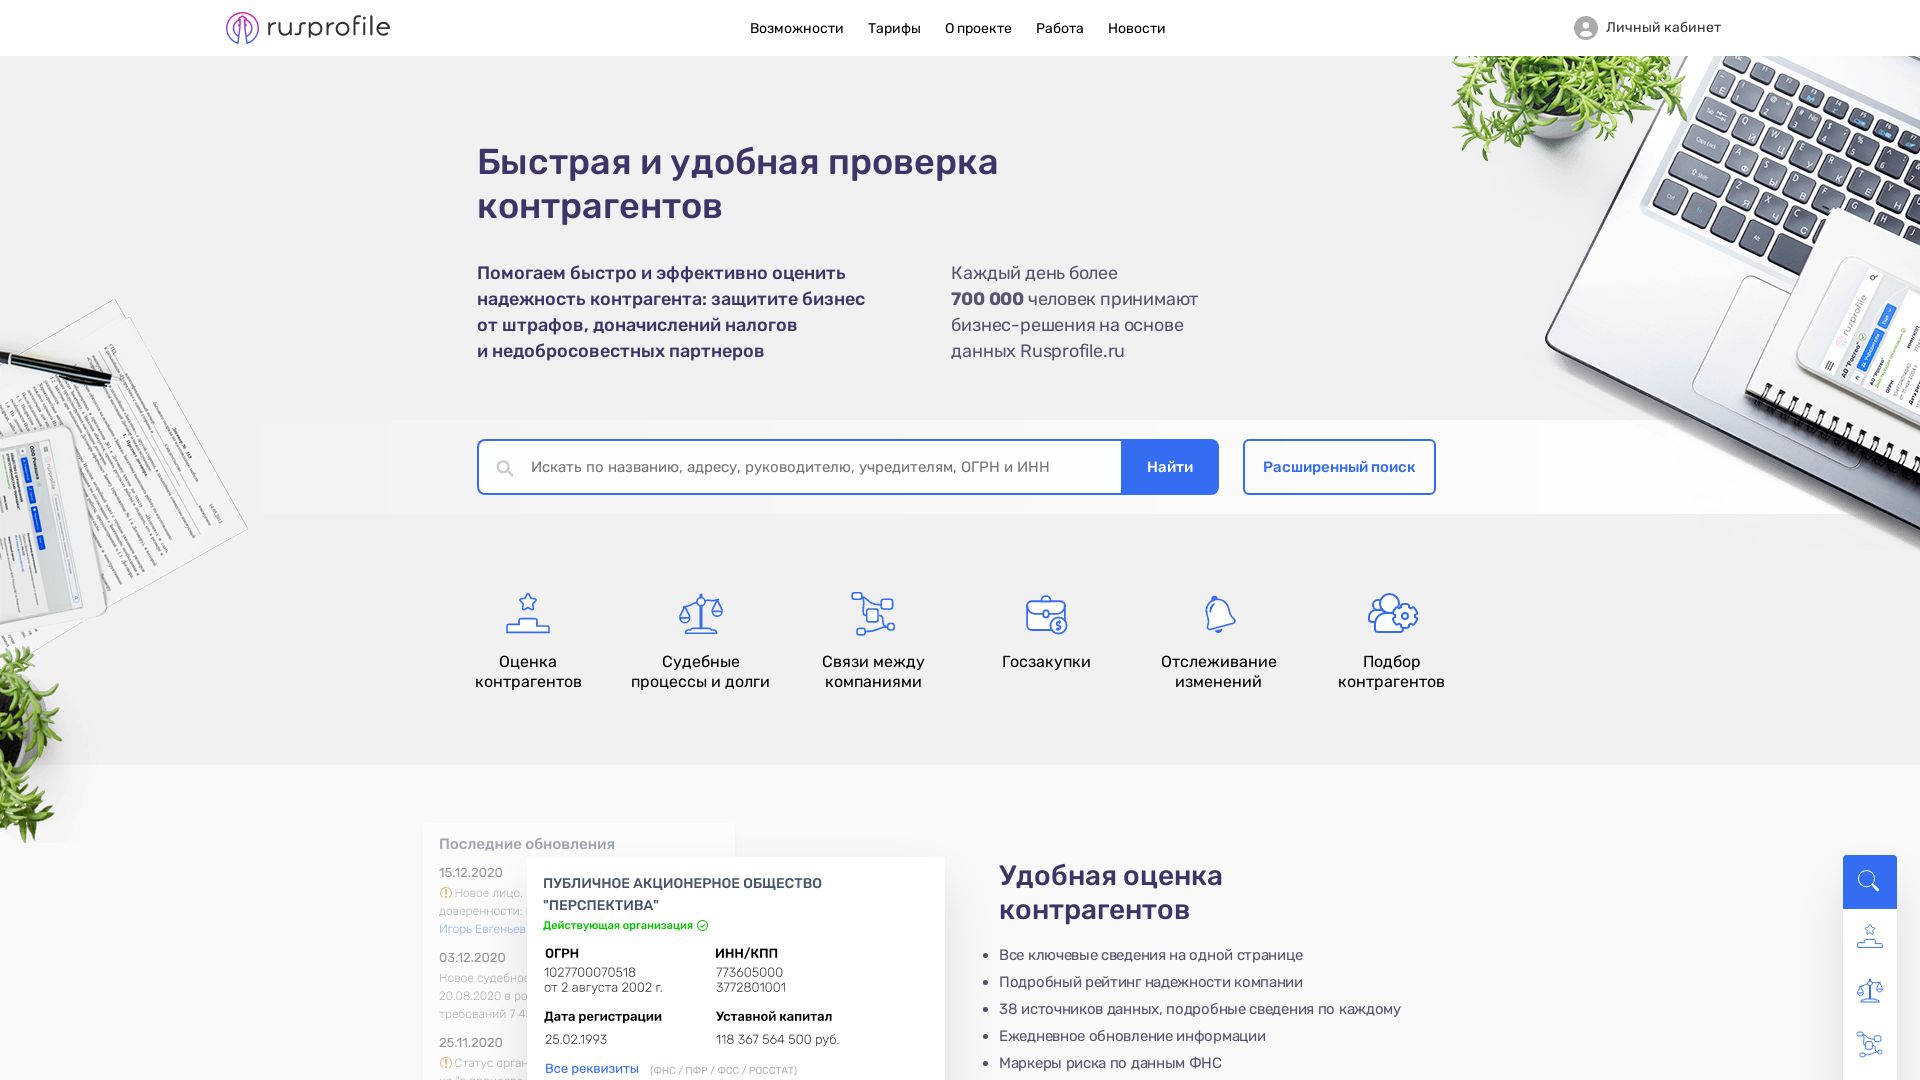 Website status rusprofile.ru is   ONLINE